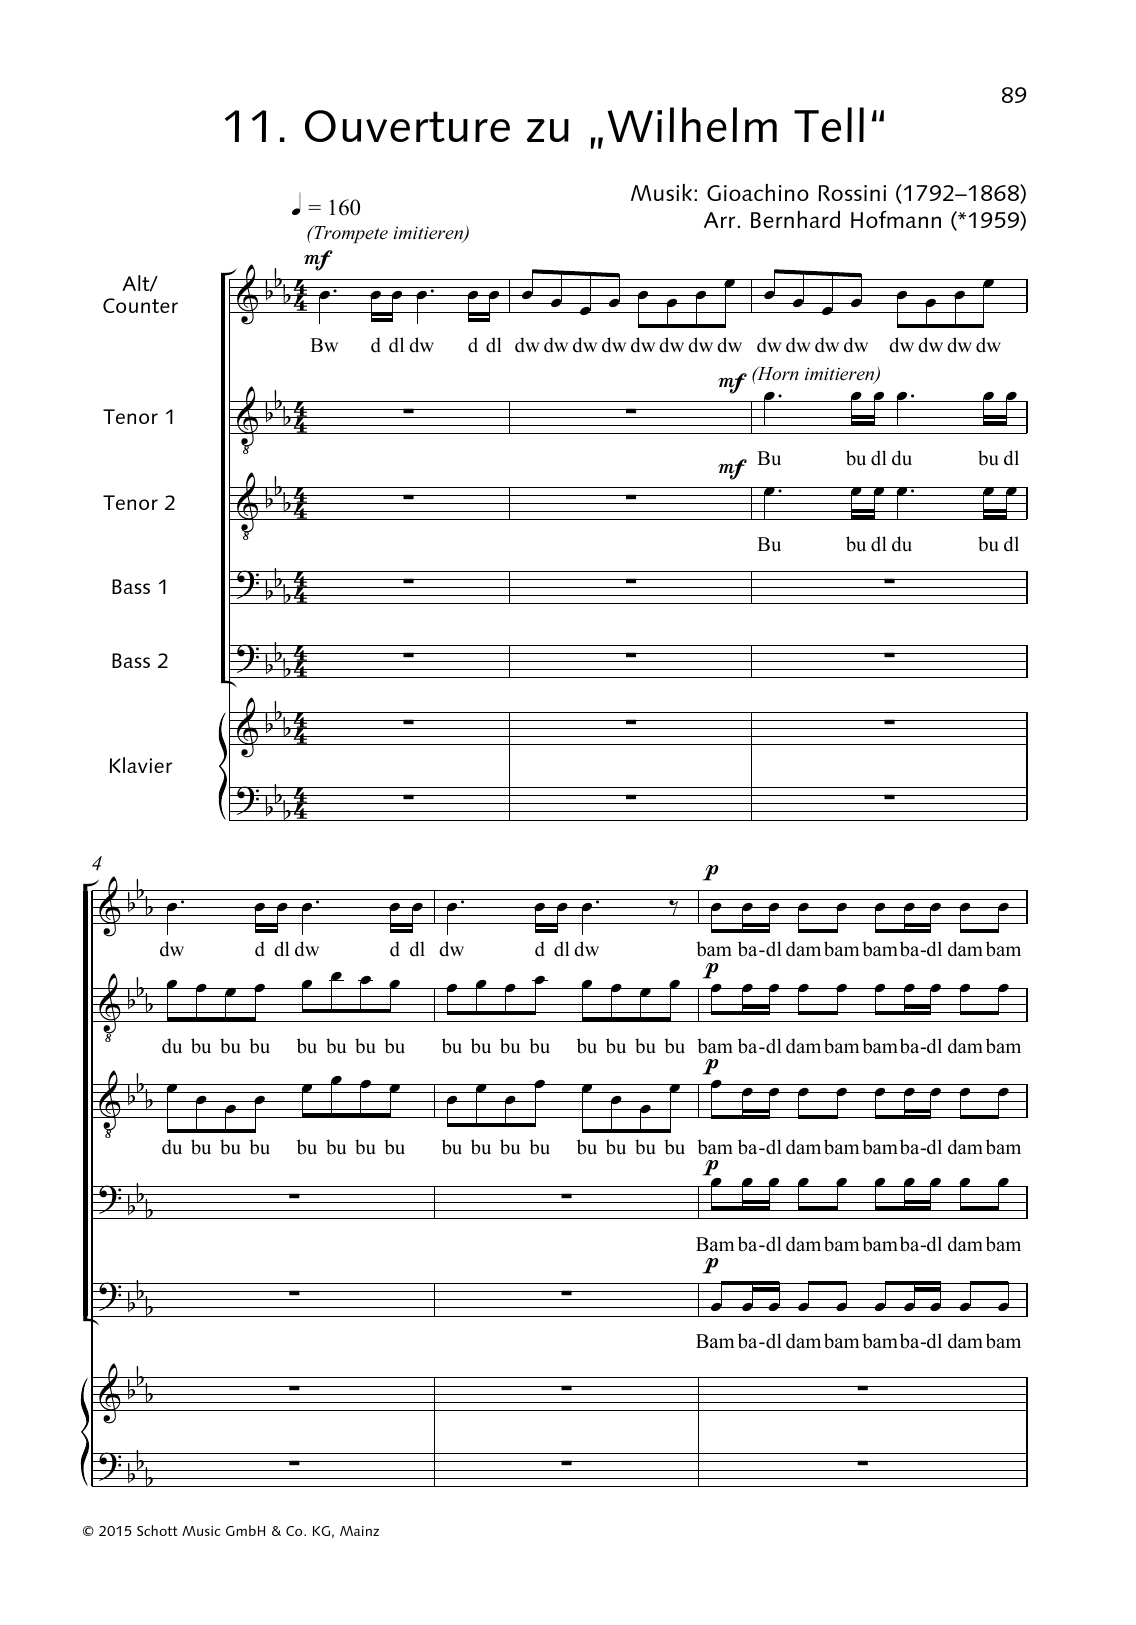 Ouverture zu Wilhelm Tell sheet music